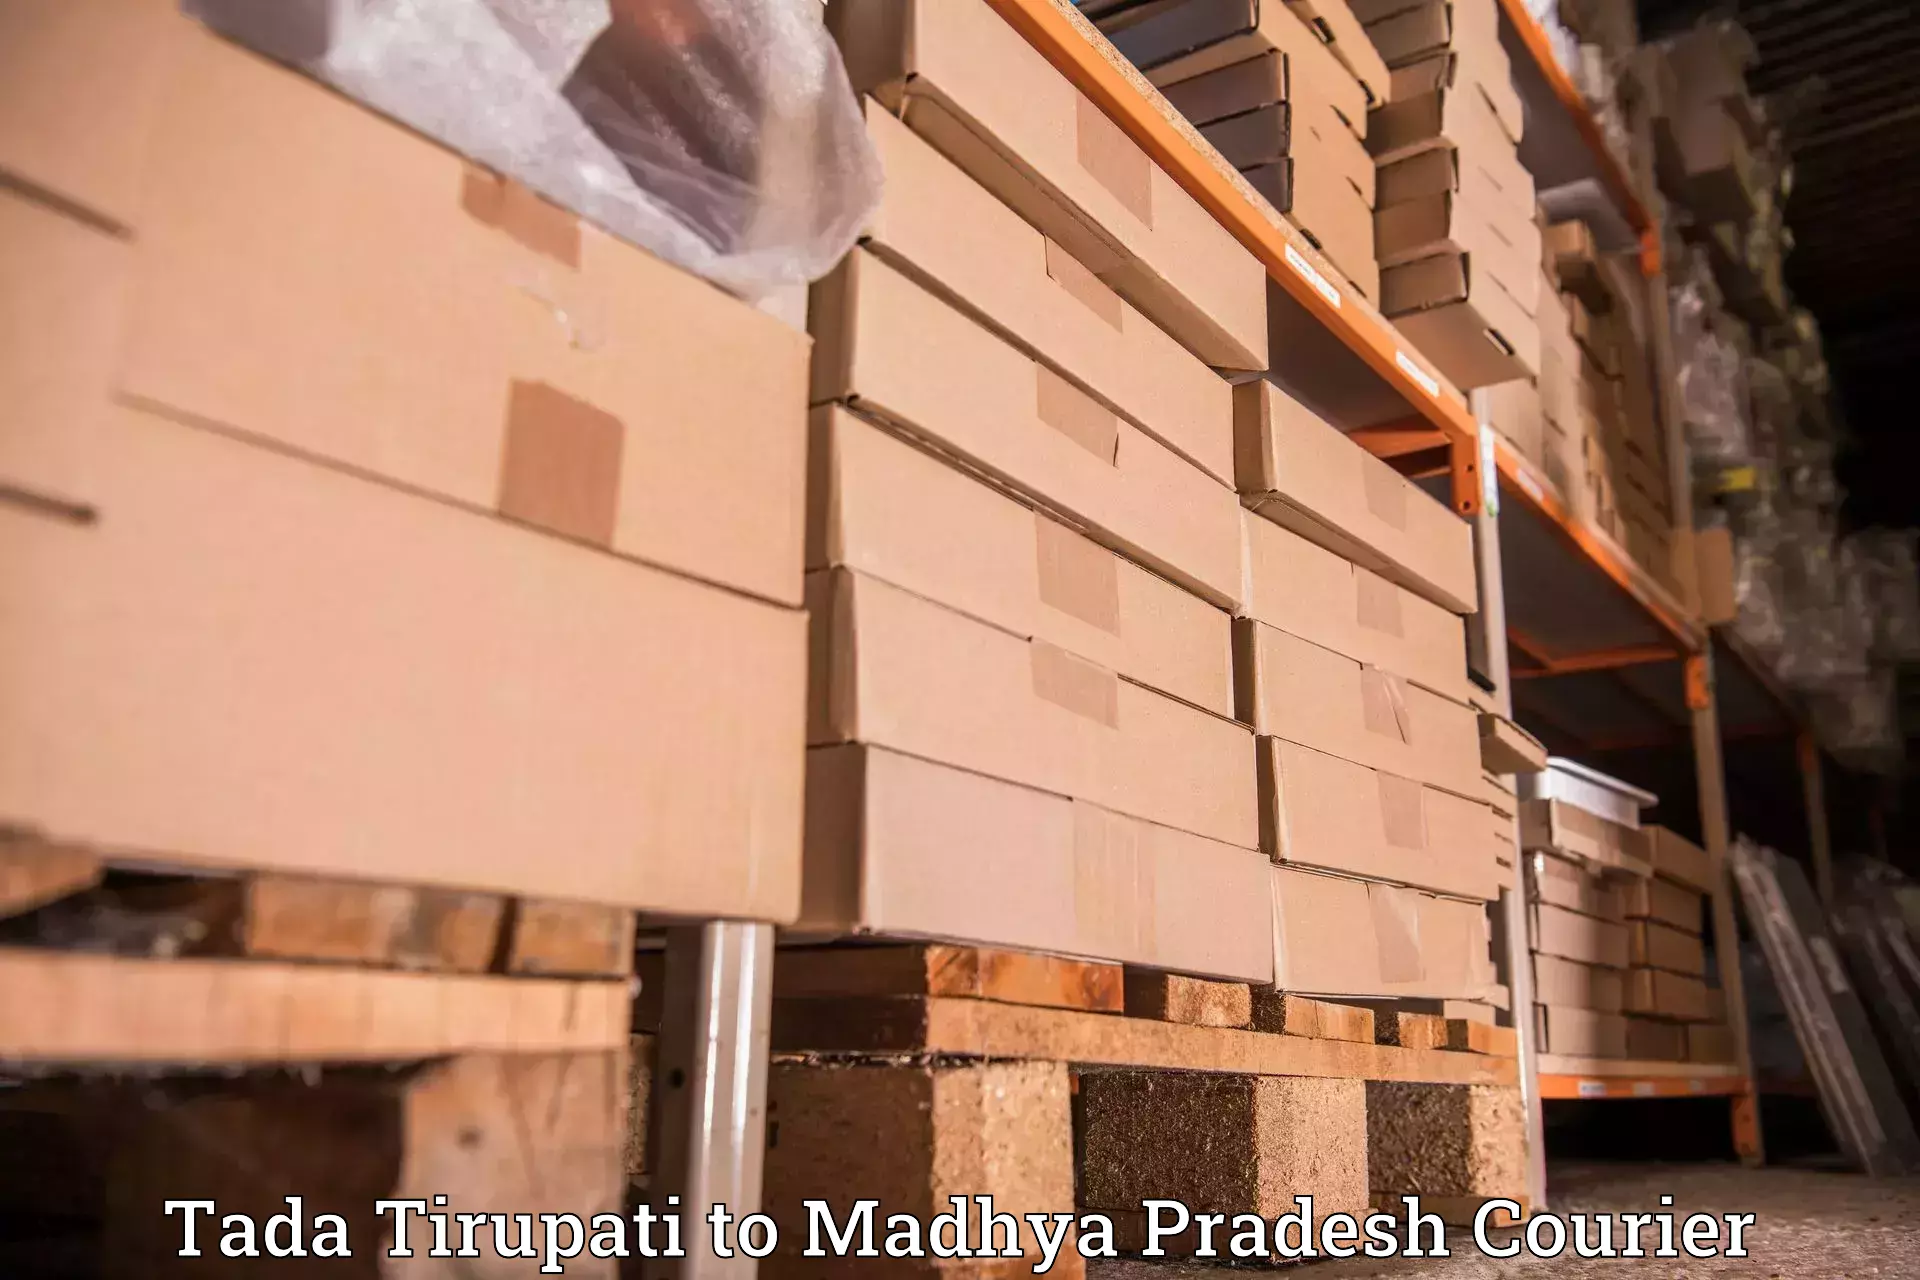 Flexible courier rates Tada Tirupati to Sausar